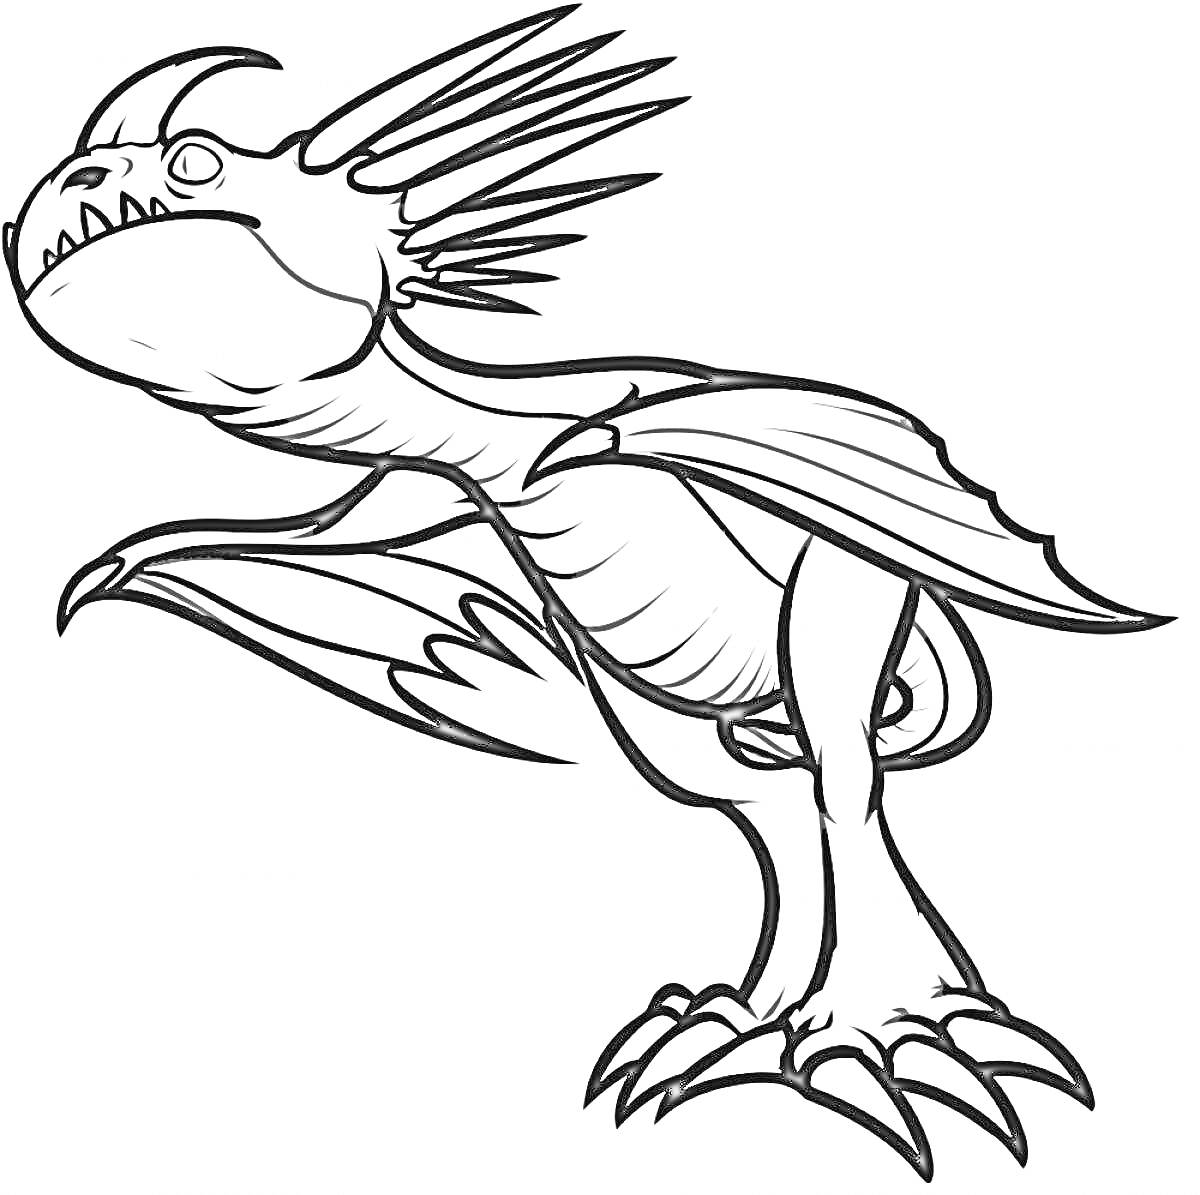 Дракон Громгильда с крыльями, когтями и шипами